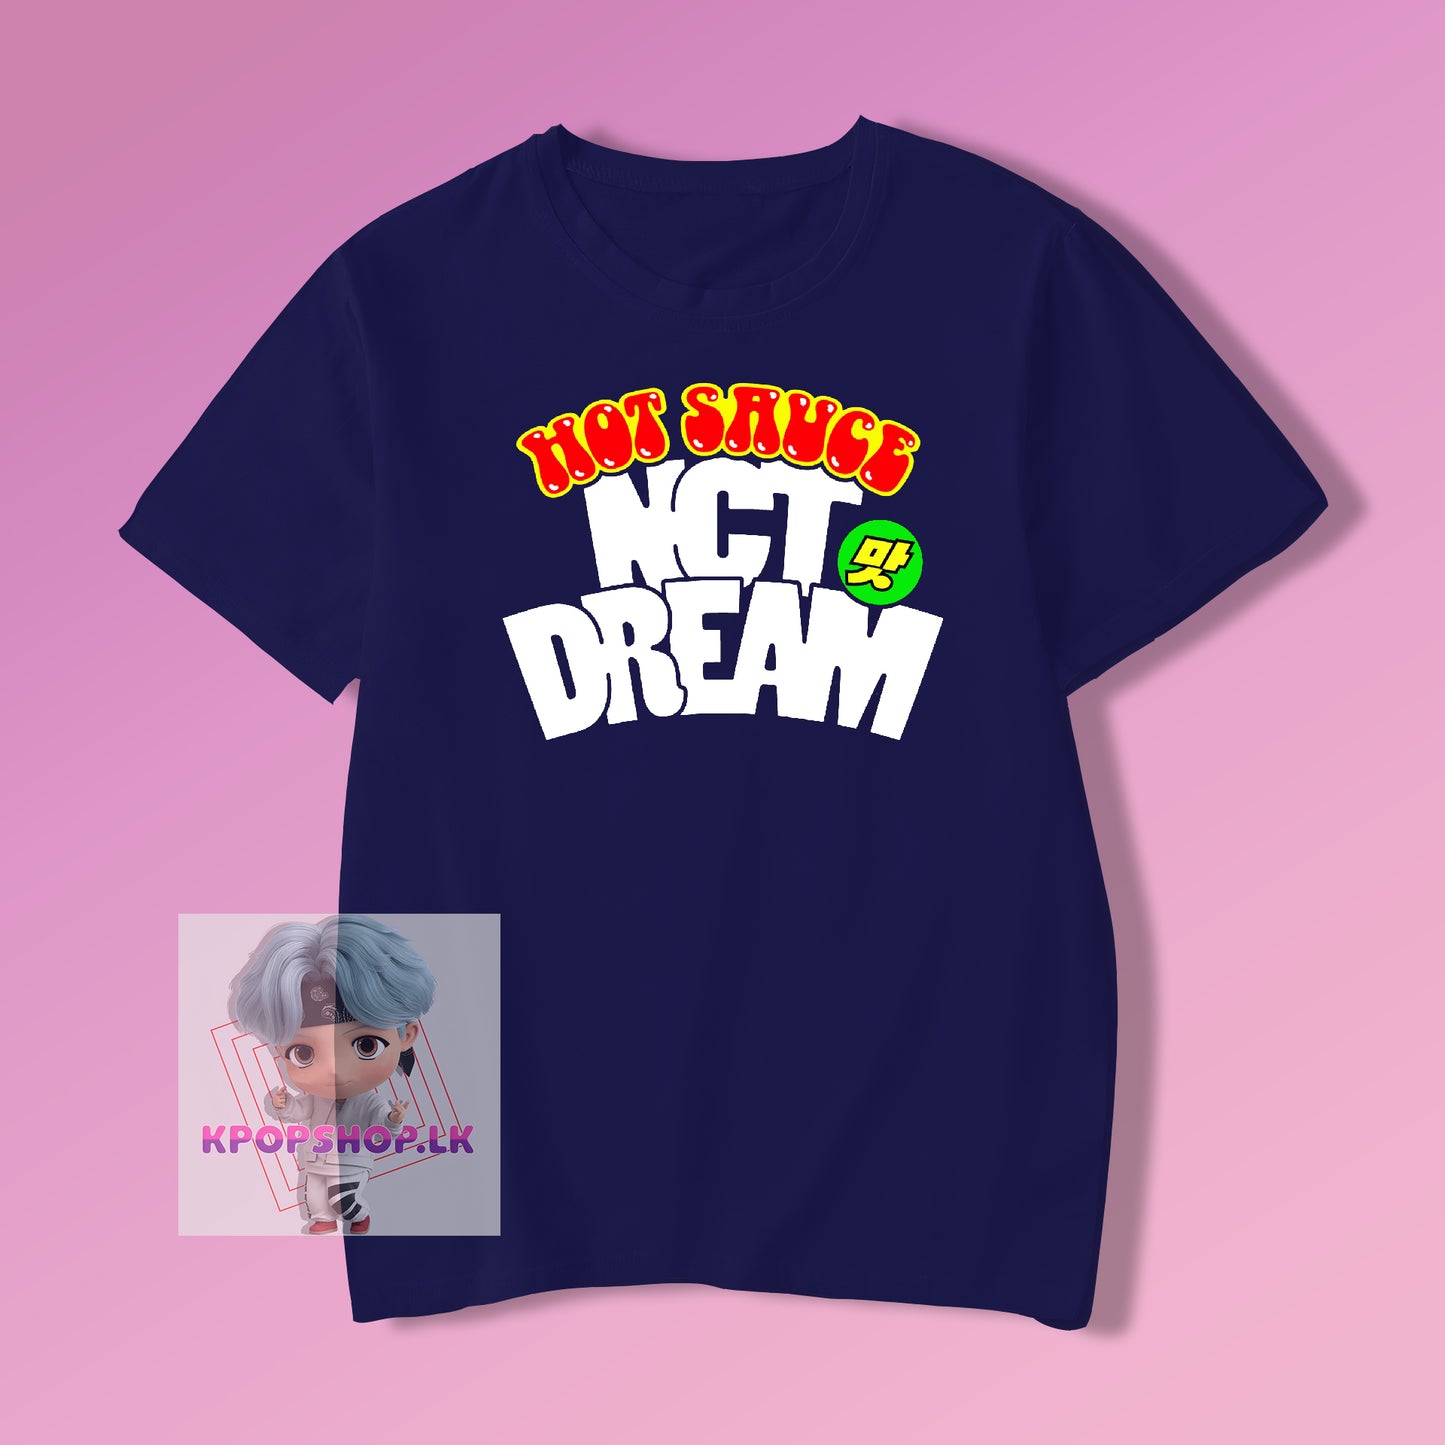 NCT Dream Hot Sauce KPOP T-shirt